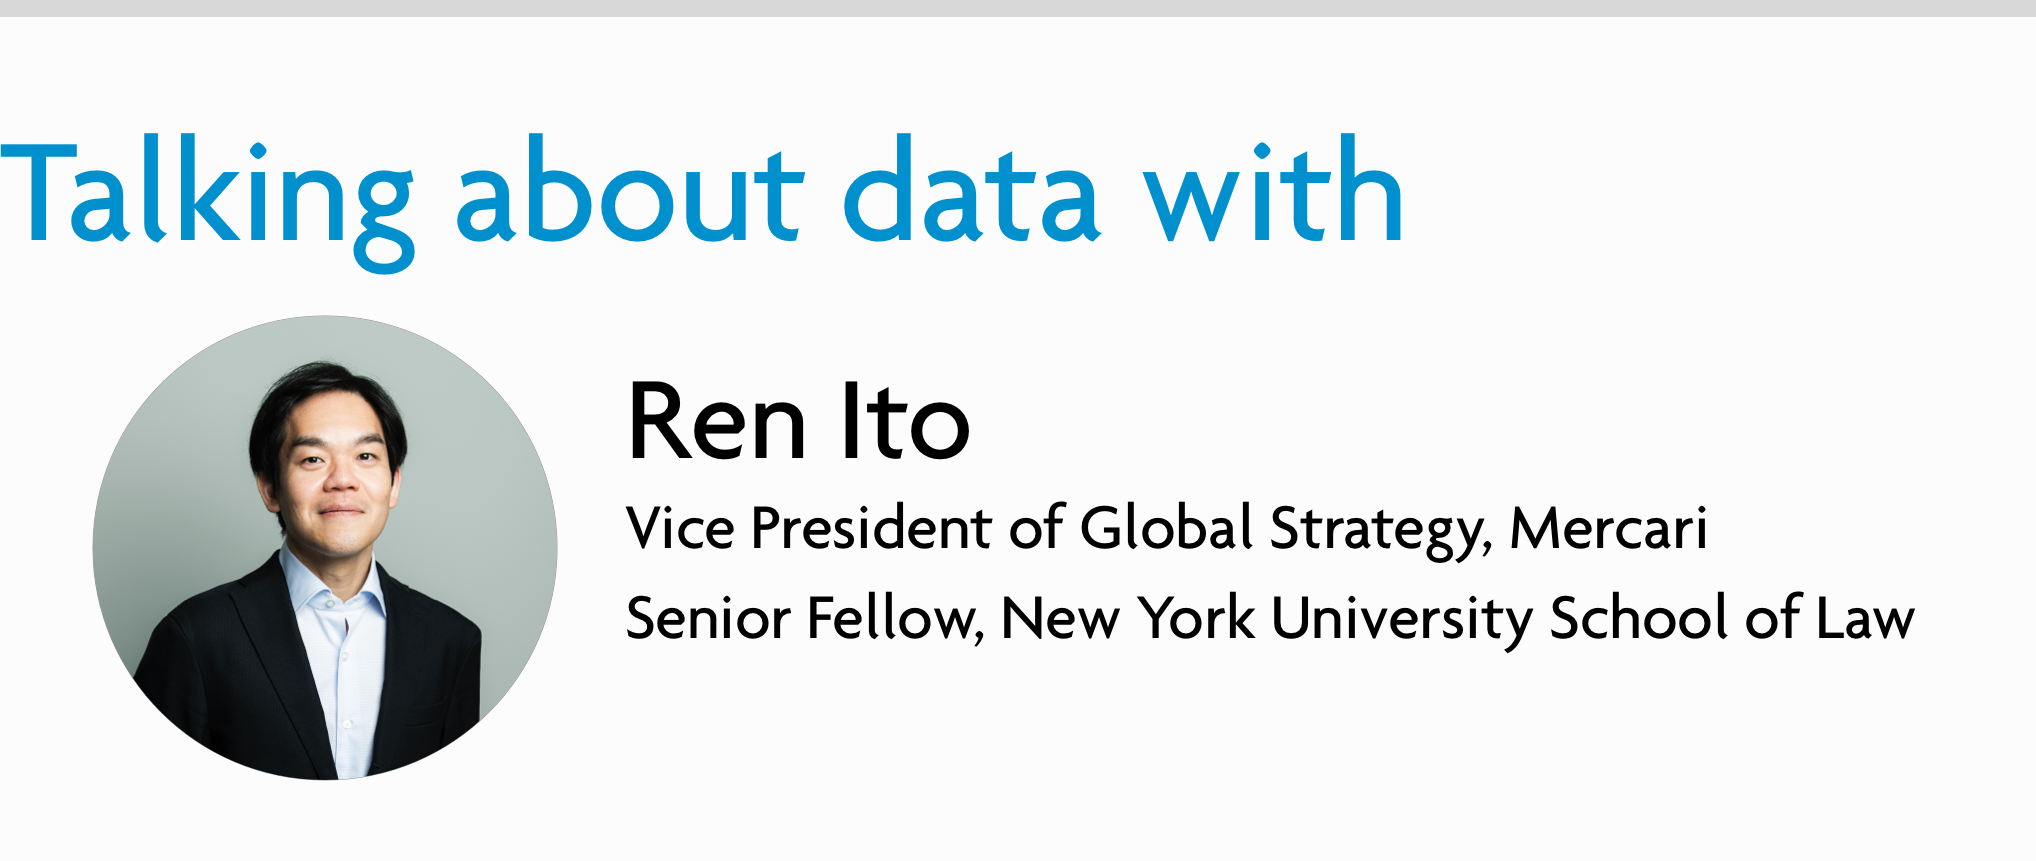 Ren-Ito-Data-banner.png#asset:11229